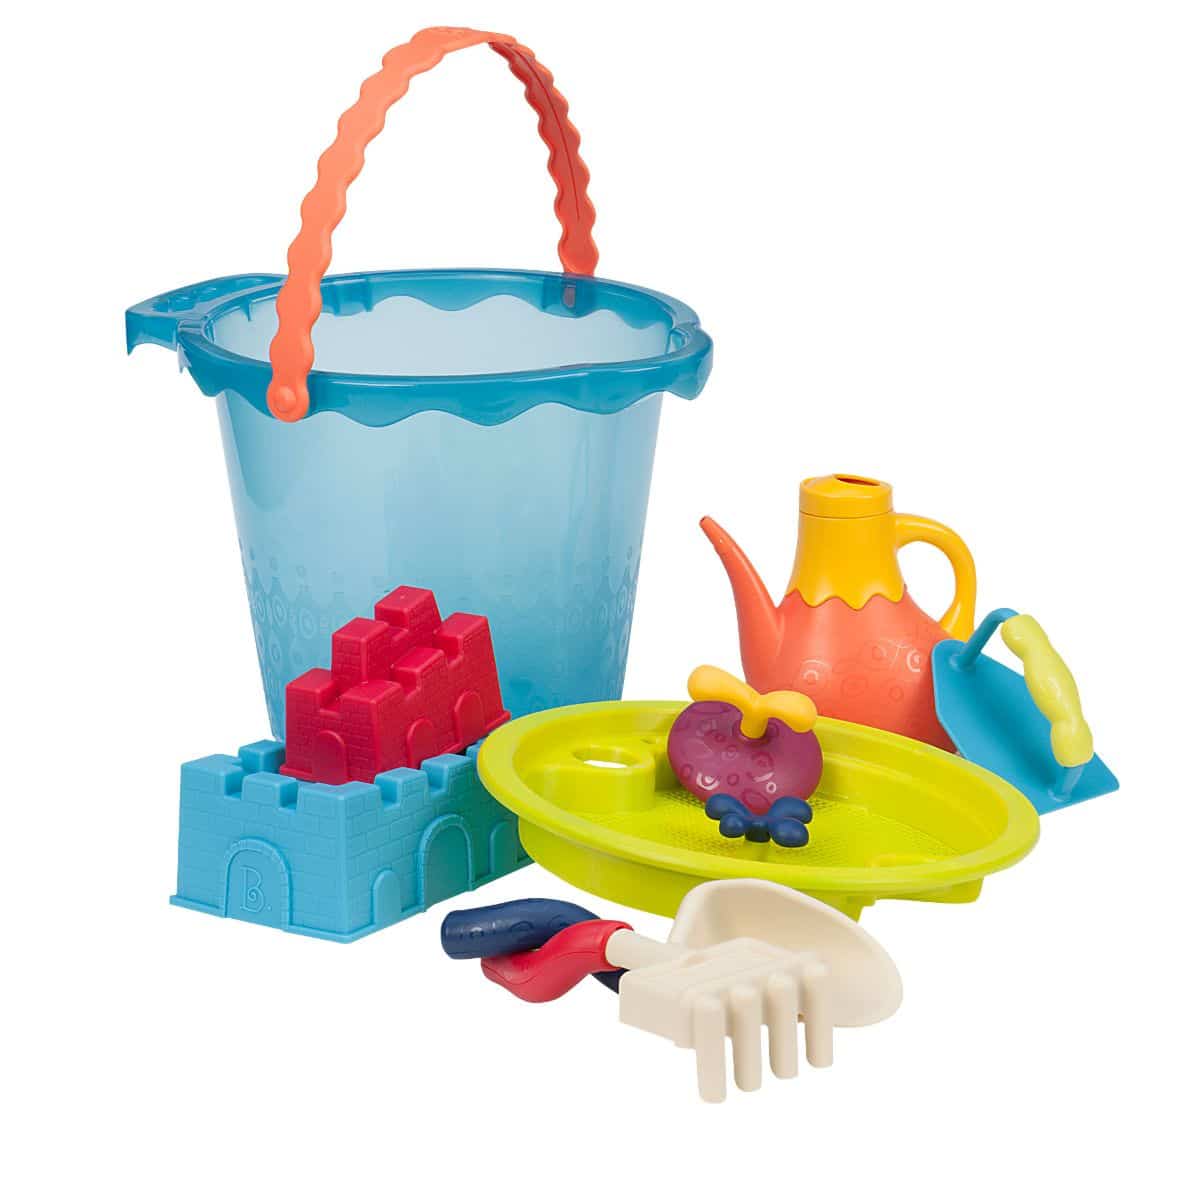 Beach toys with blue bucket.